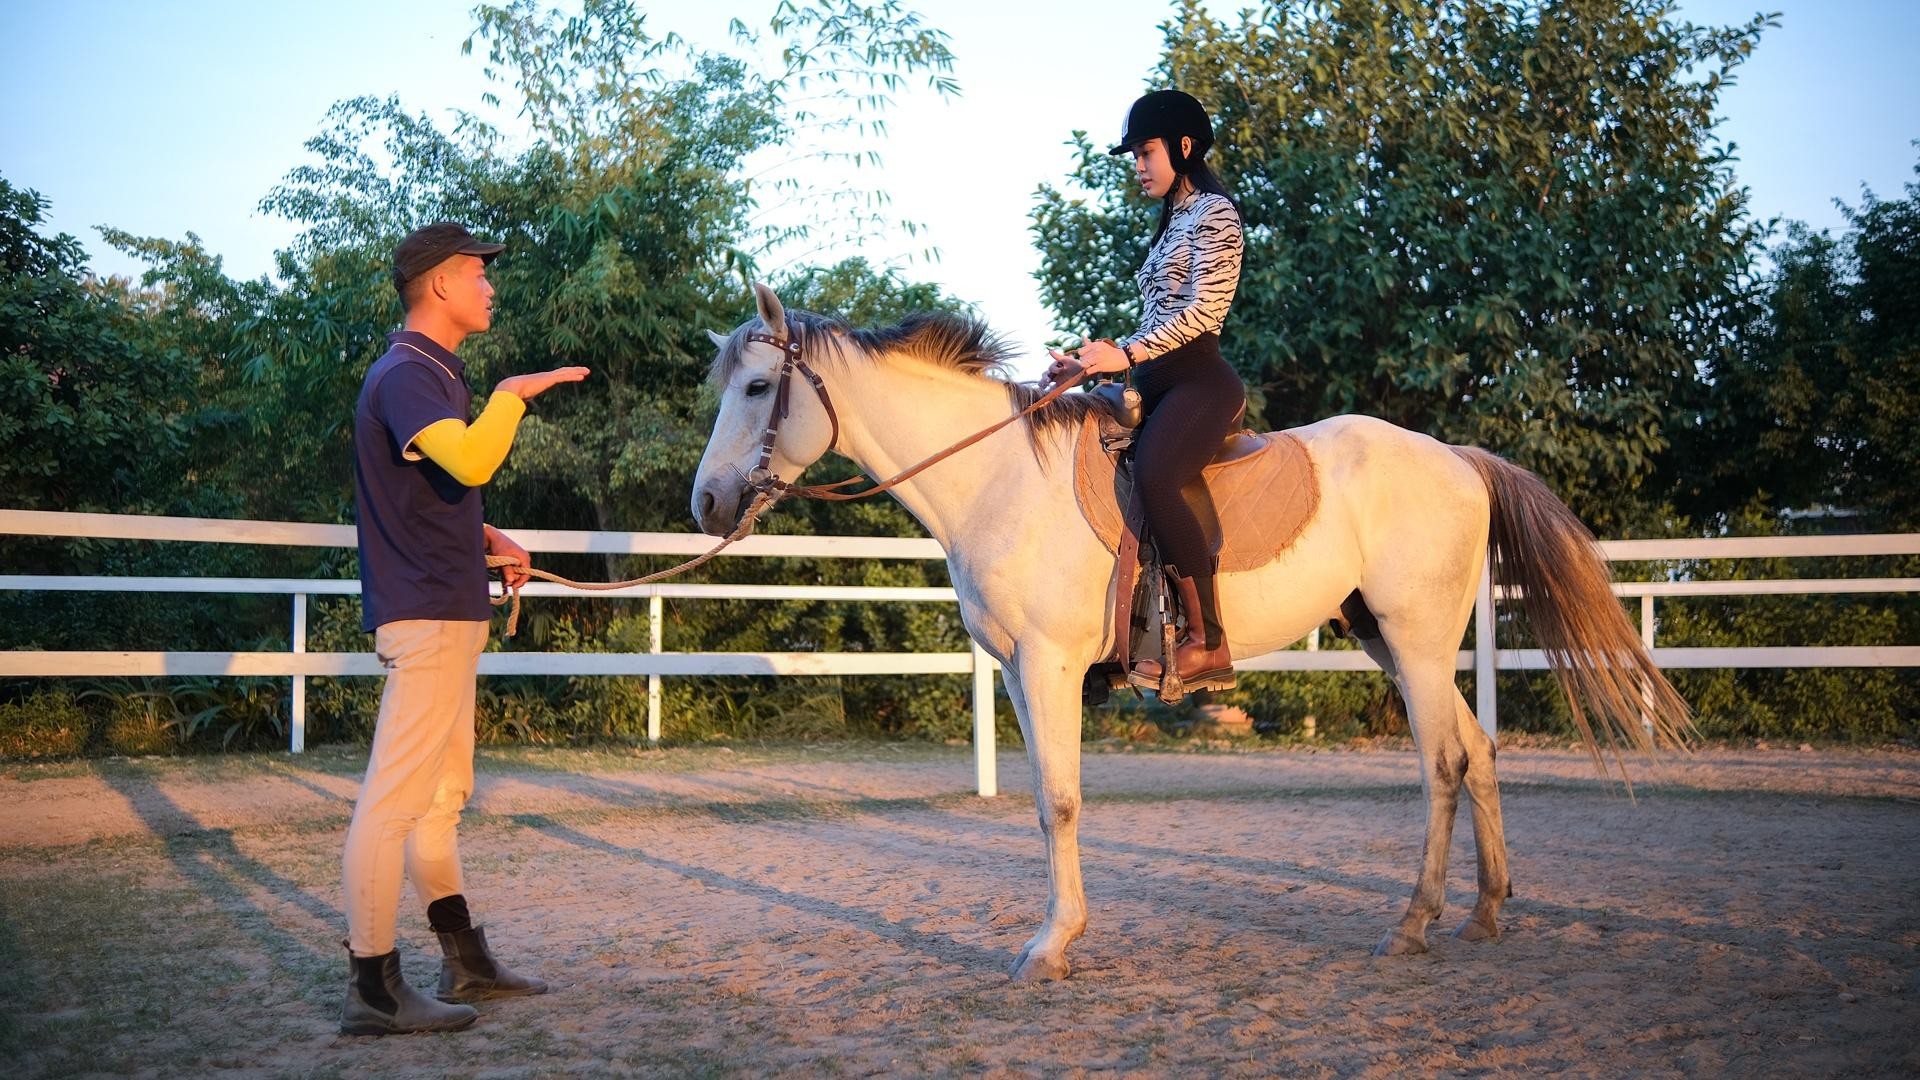 Huấn luyện viên dạy cưỡi ngựa theo phong cách châu Âu tại Hà Nội ảnh 7